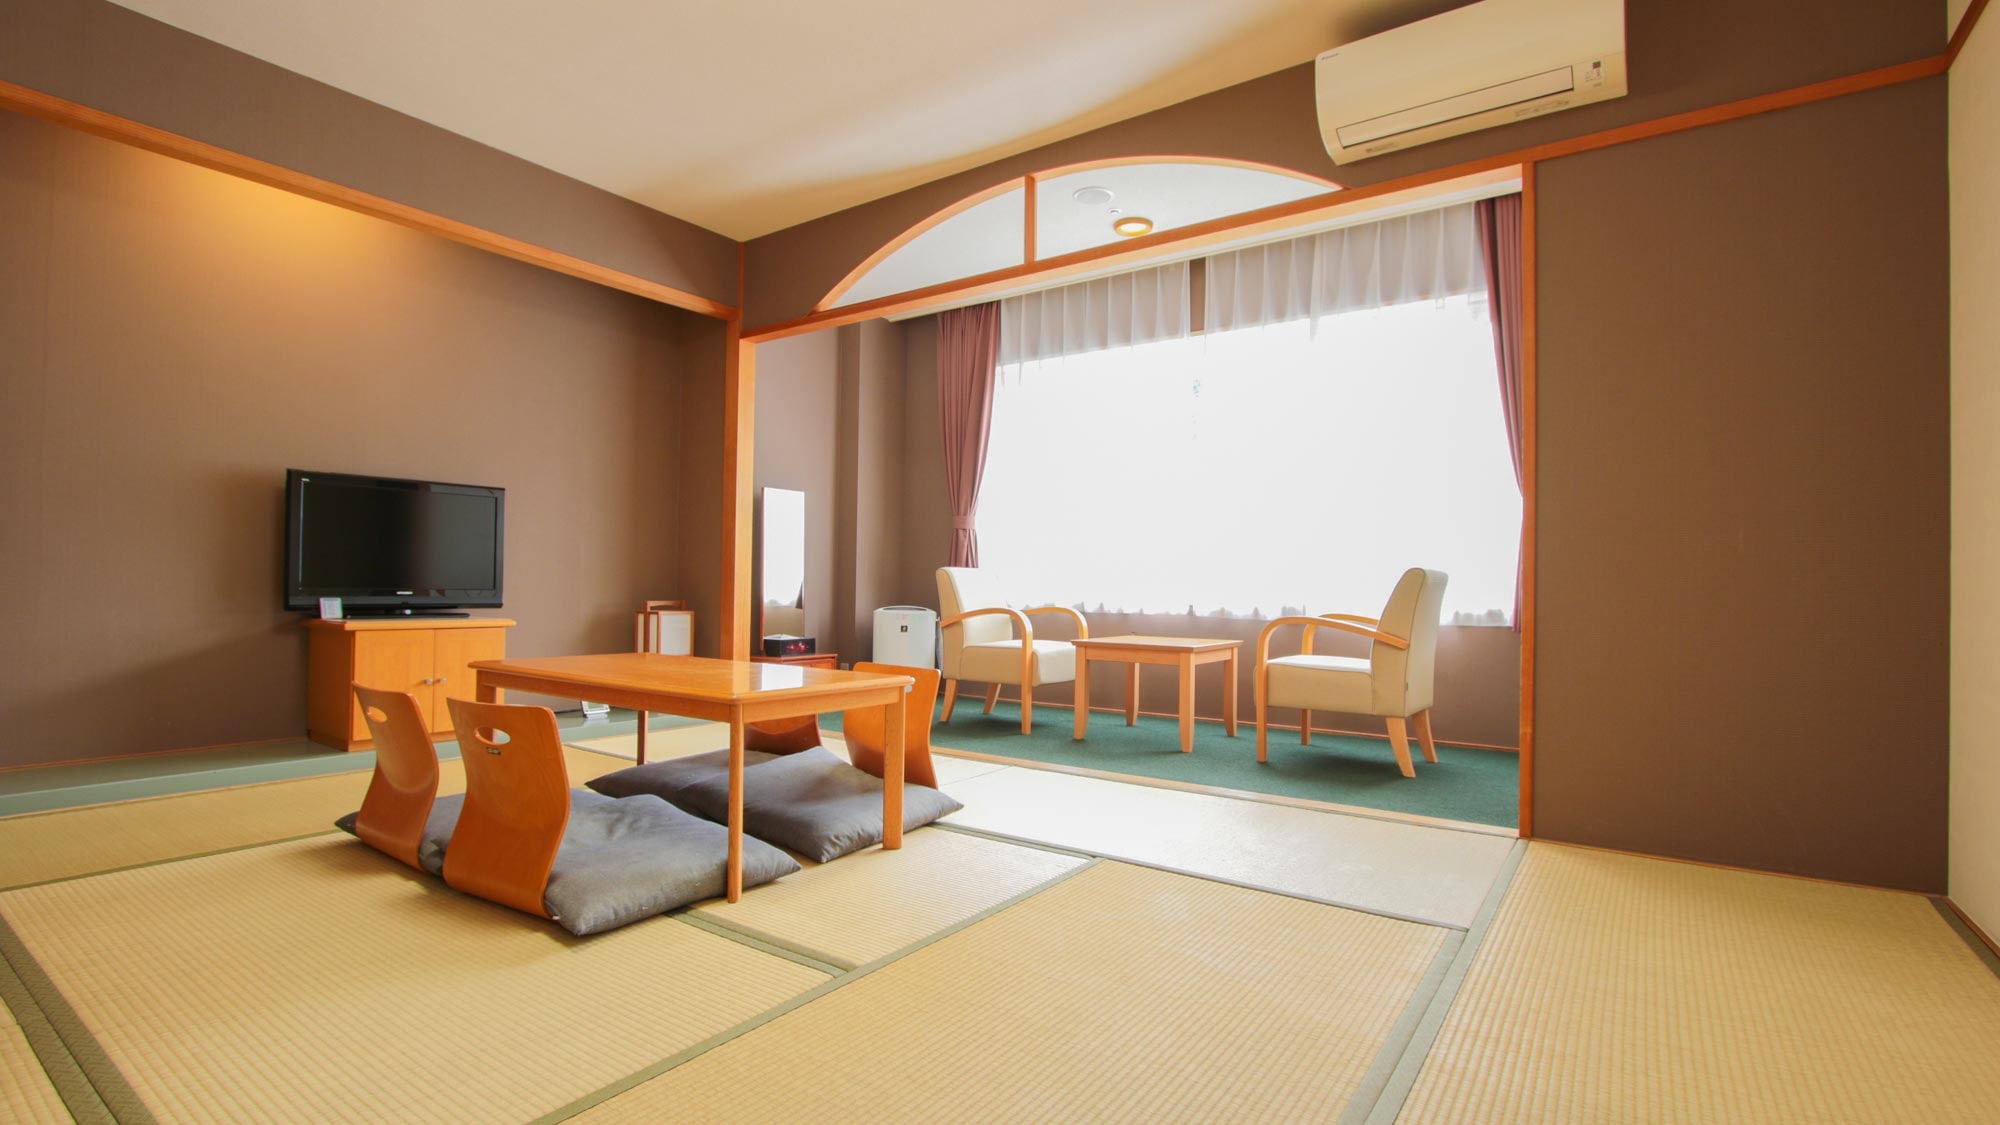 Kamar bergaya Jepang 10 tikar tatami (kamar longgar bergaya Jepang)